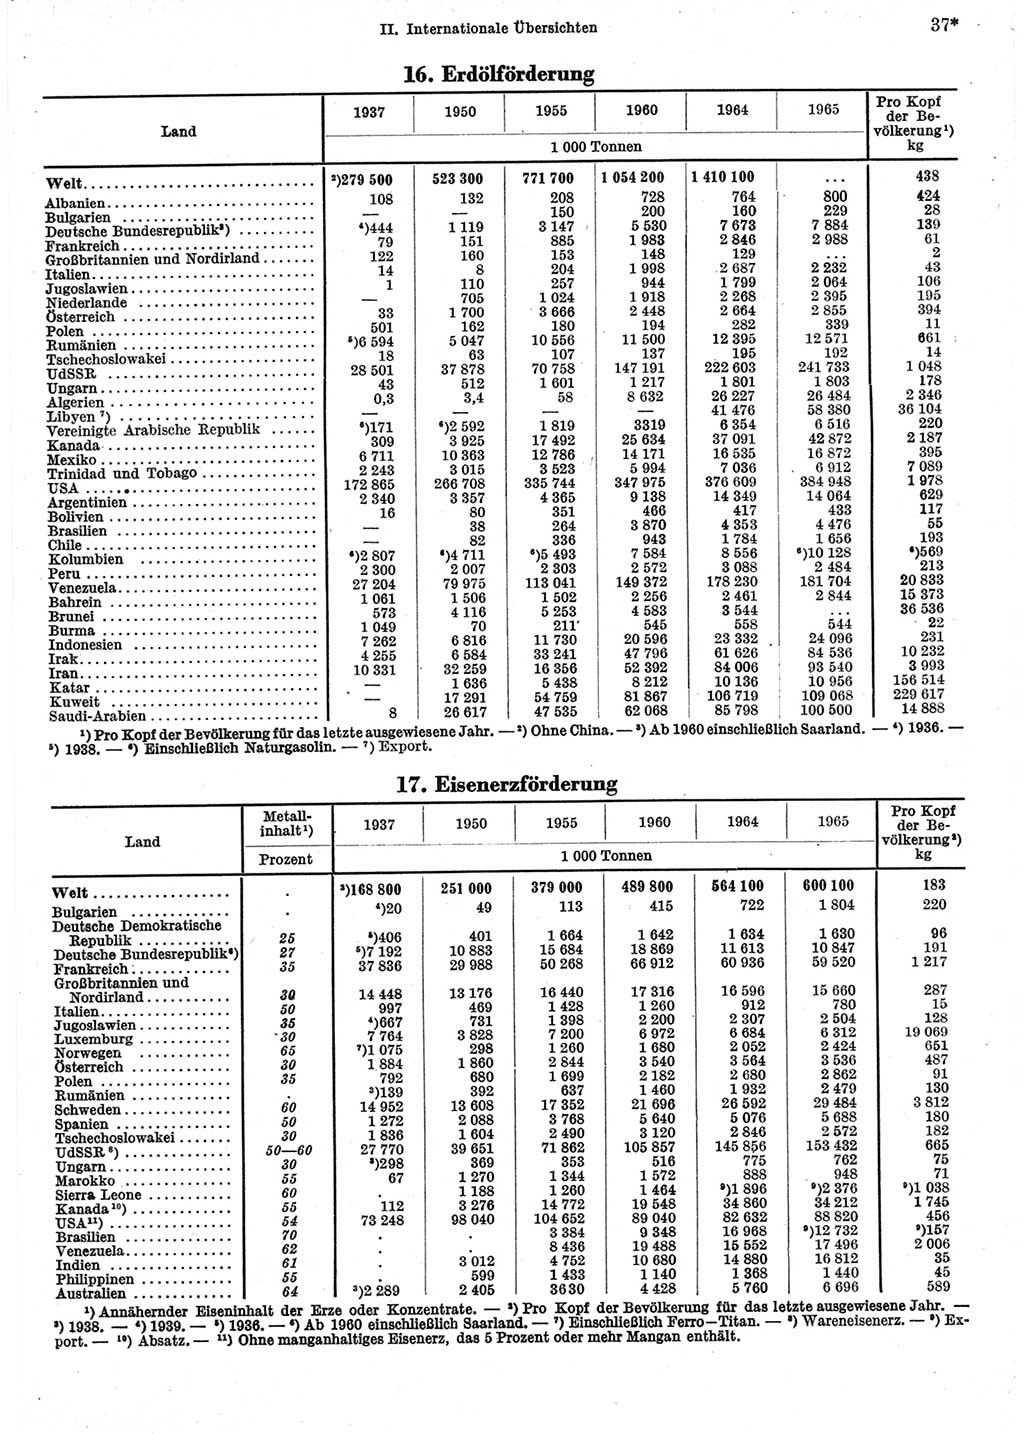 Statistisches Jahrbuch der Deutschen Demokratischen Republik (DDR) 1967, Seite 37 (Stat. Jb. DDR 1967, S. 37)